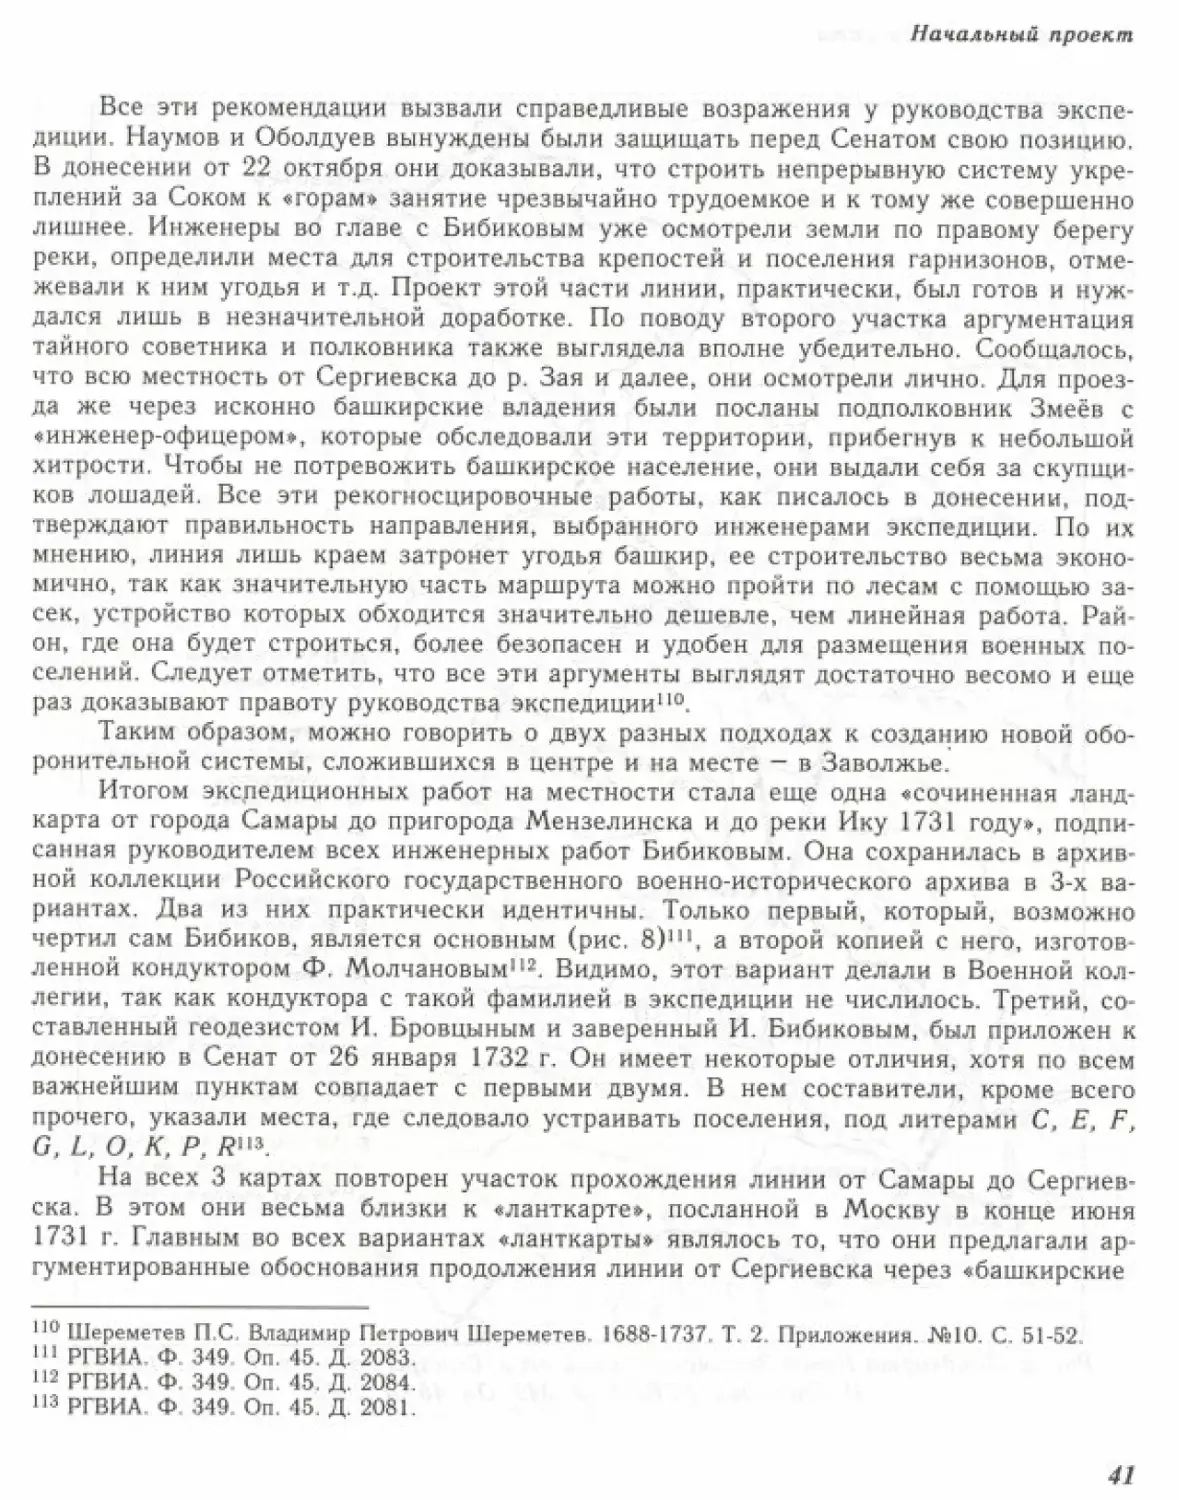 Вал0043.pdf (p.42)